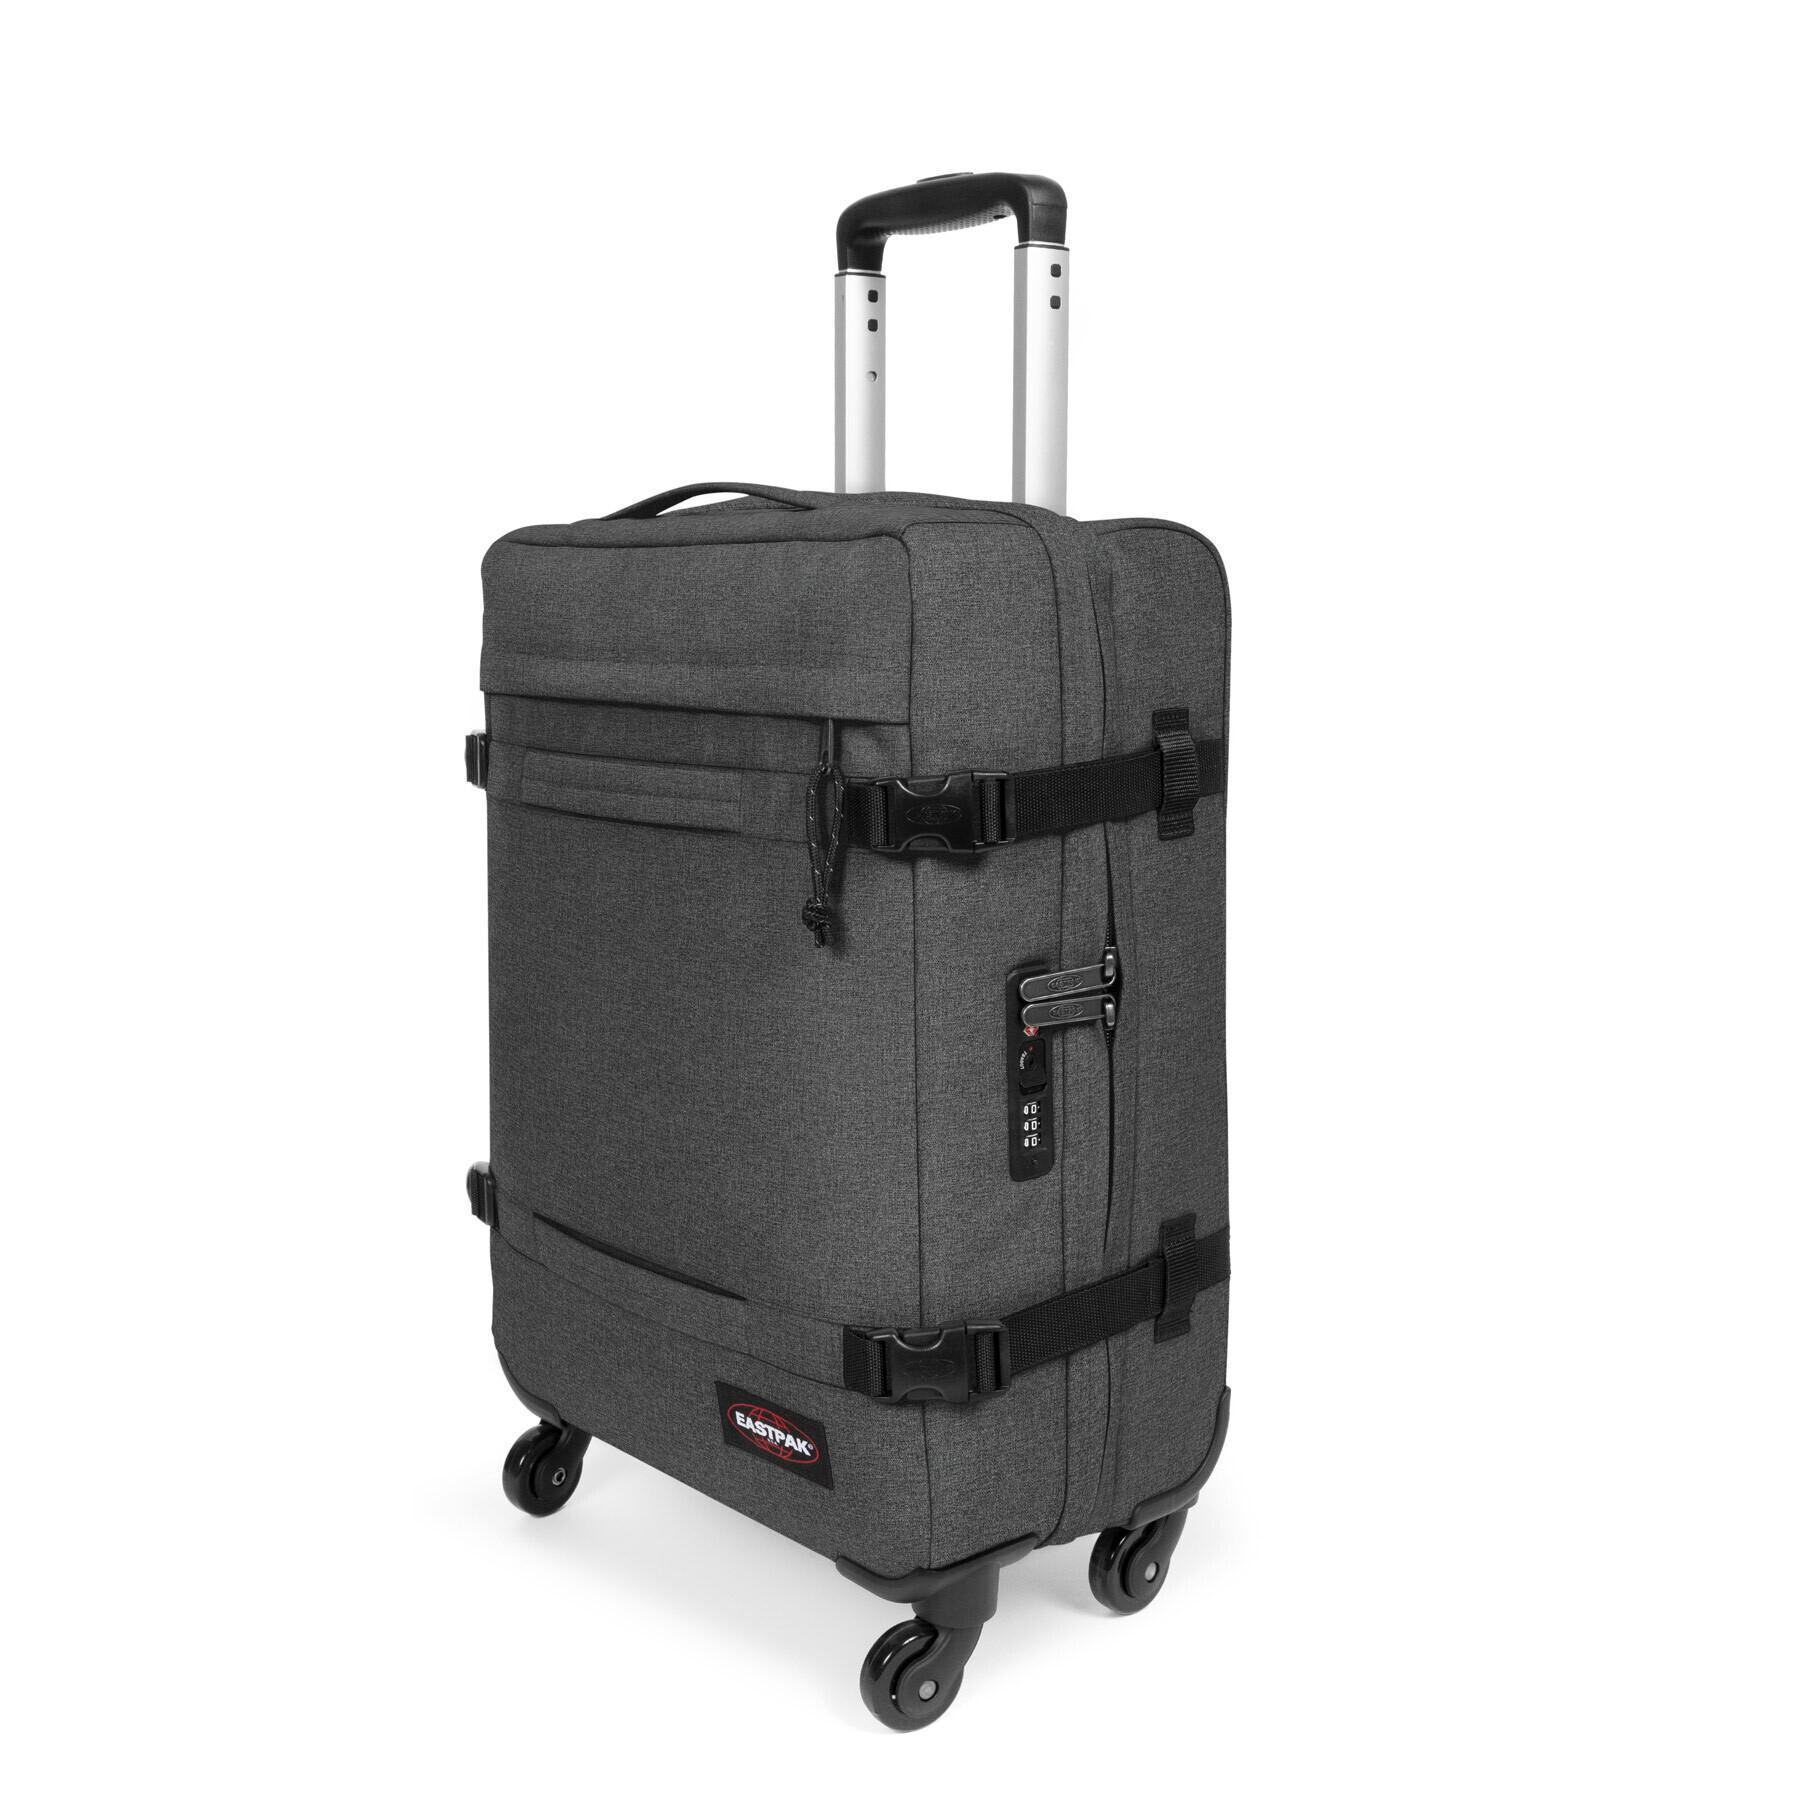 Suitcase Eastpak Transit'R 4 S